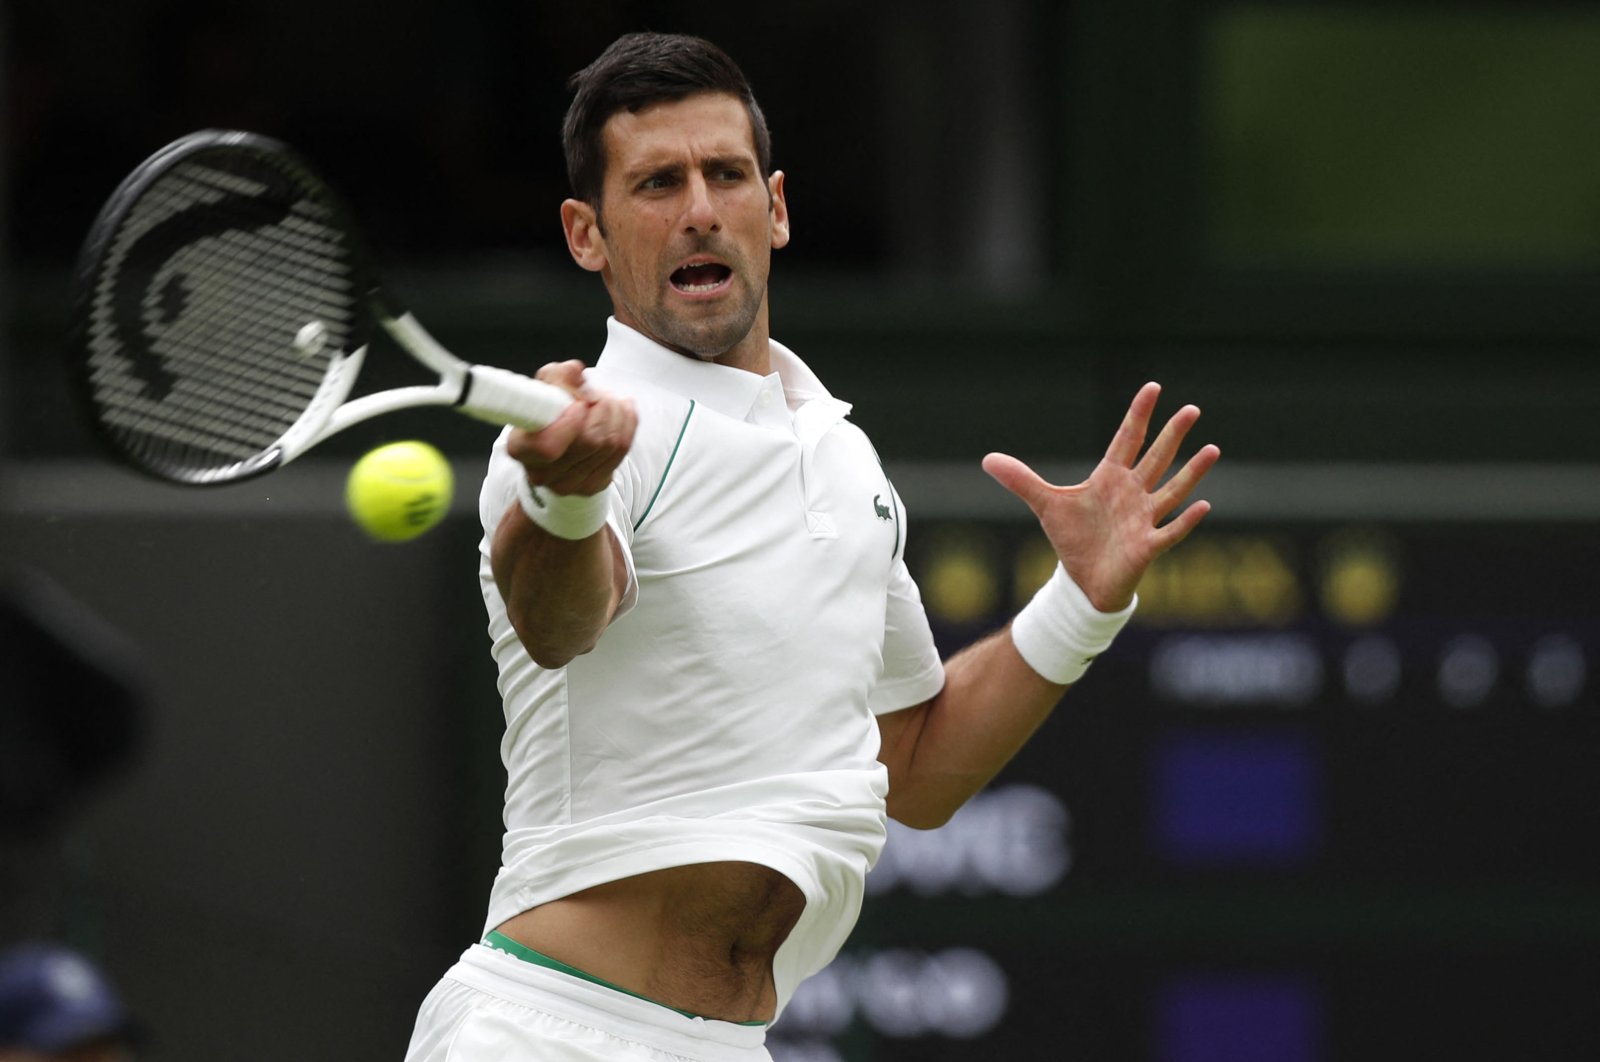 Djokovic meraih kemenangan ke-80, saat Jabeur, Raducanu melambung di Wimbledon